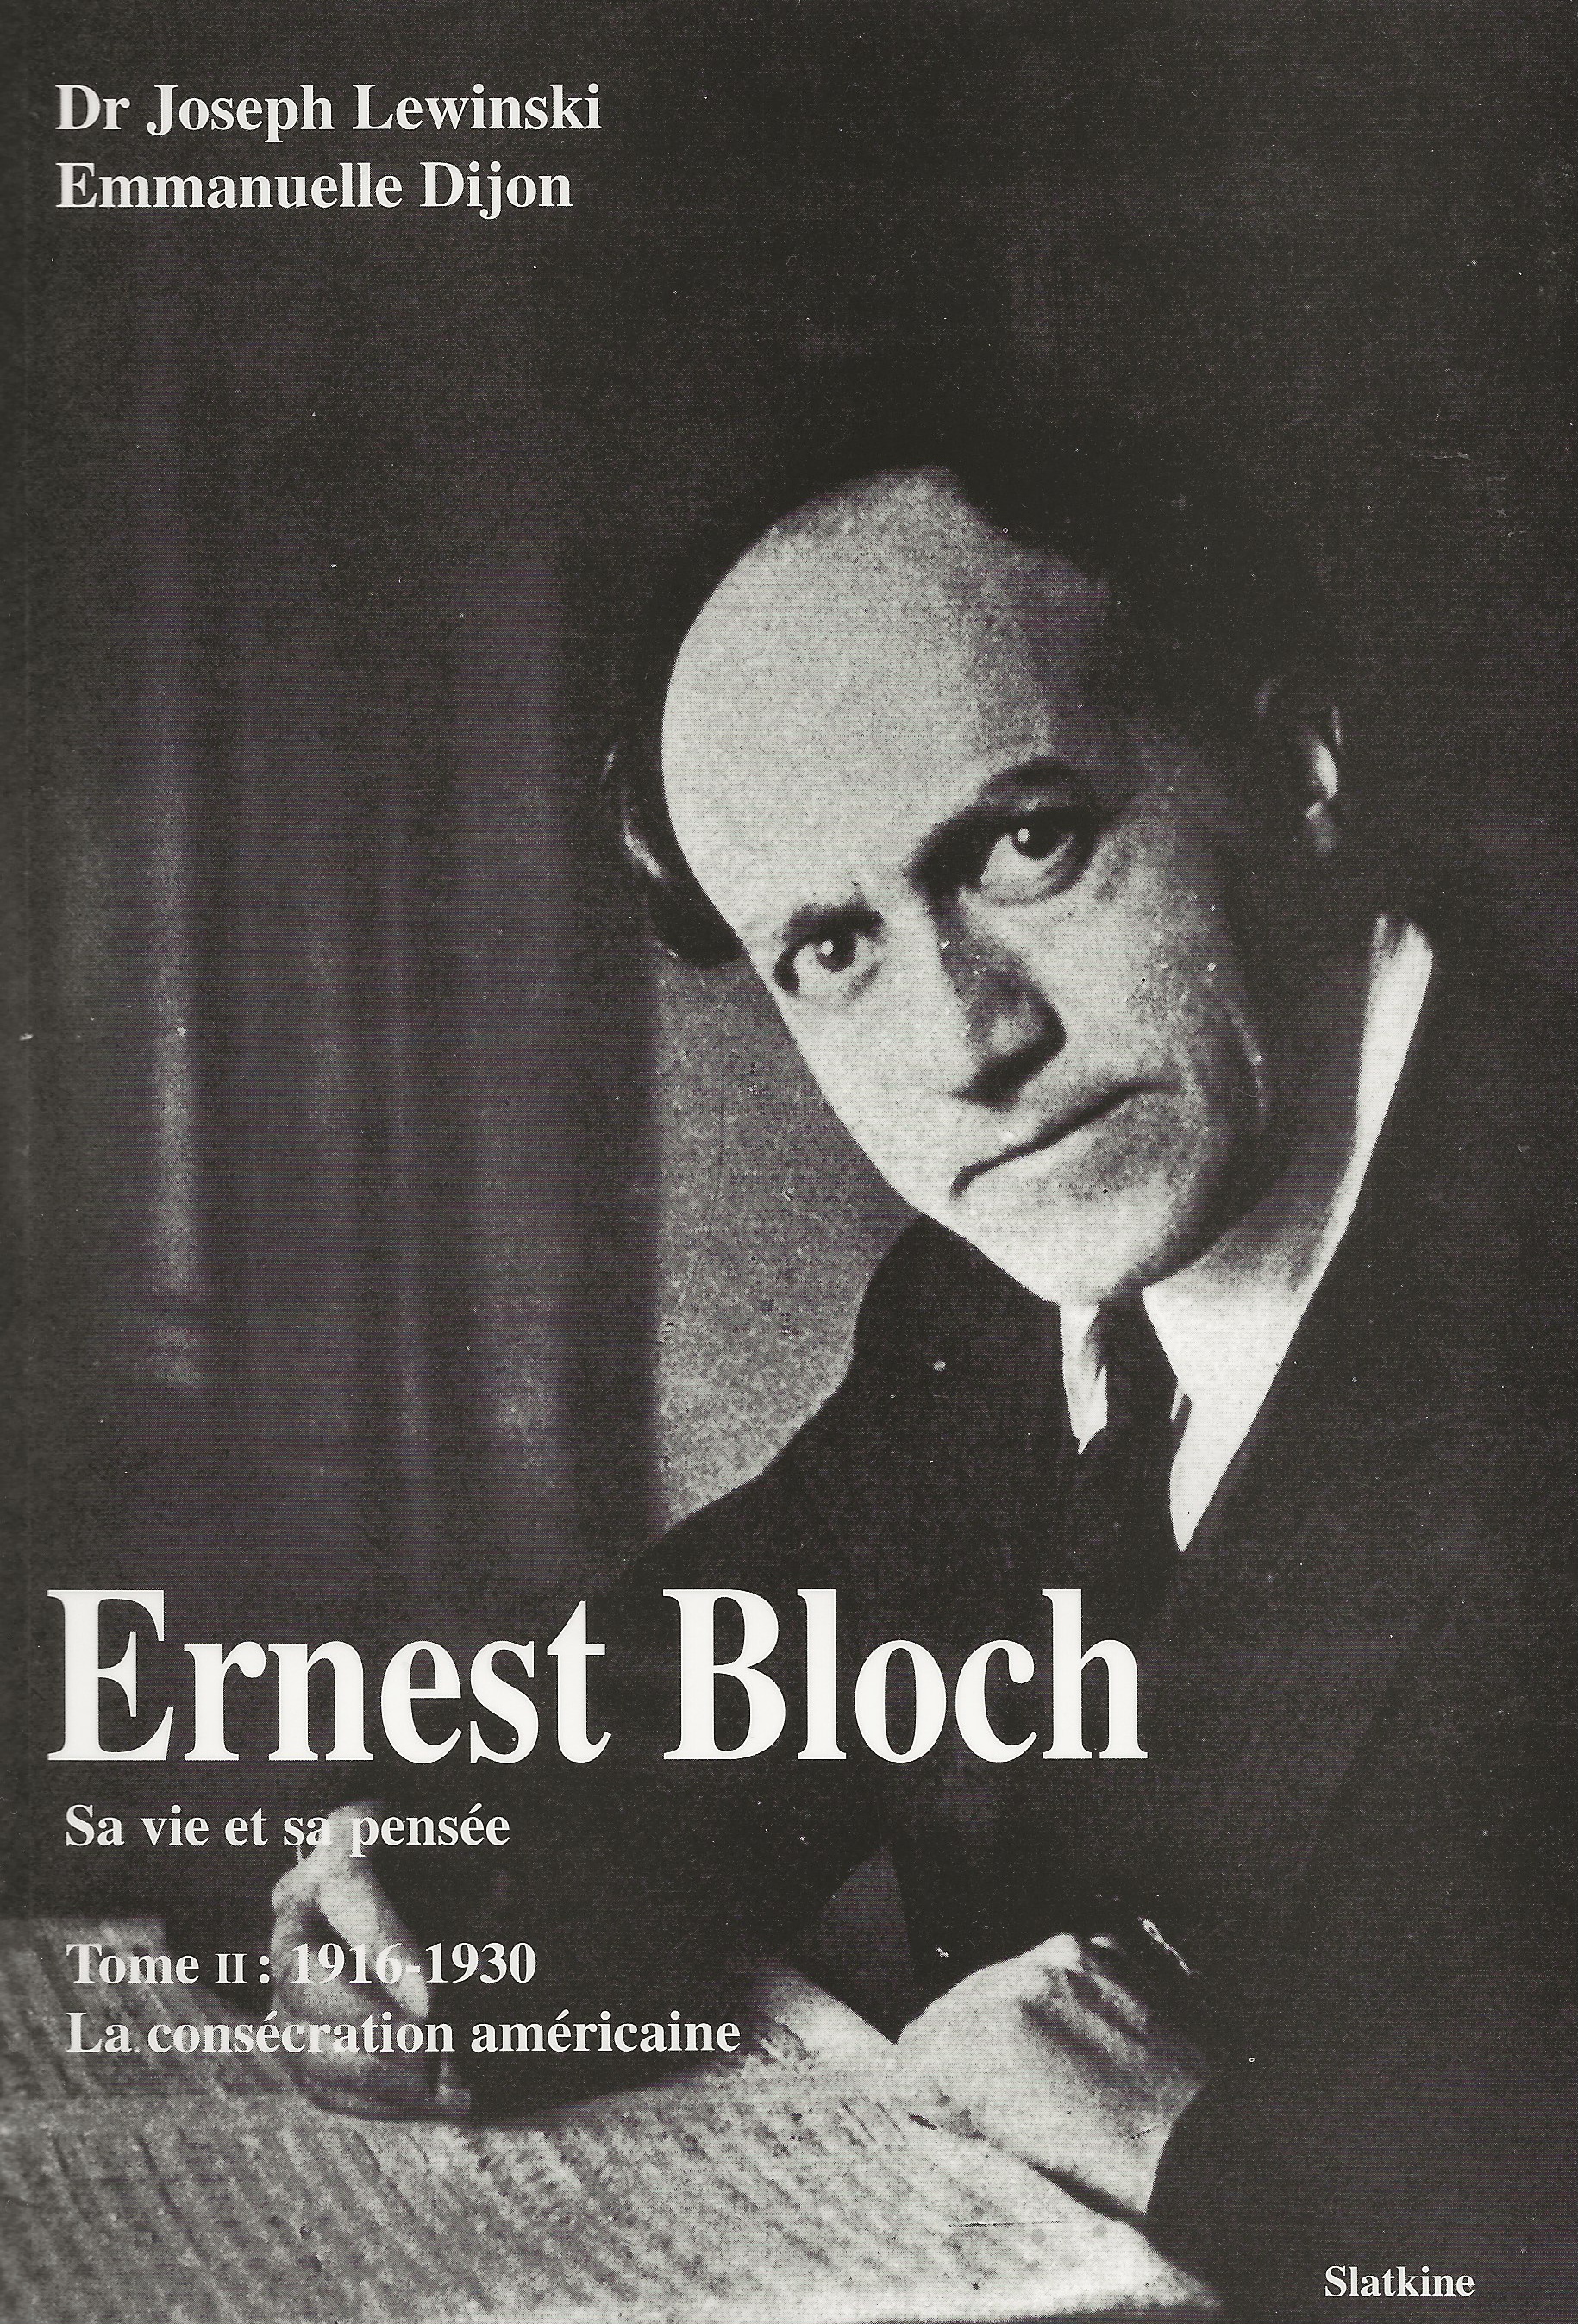 Page de couverture du 2e volume de l'ouvrage de Joseph Lewinski et Emmanuelle Dijon “Ernest Bloch - Sa vie et sa pensée” publié chez Slatkine